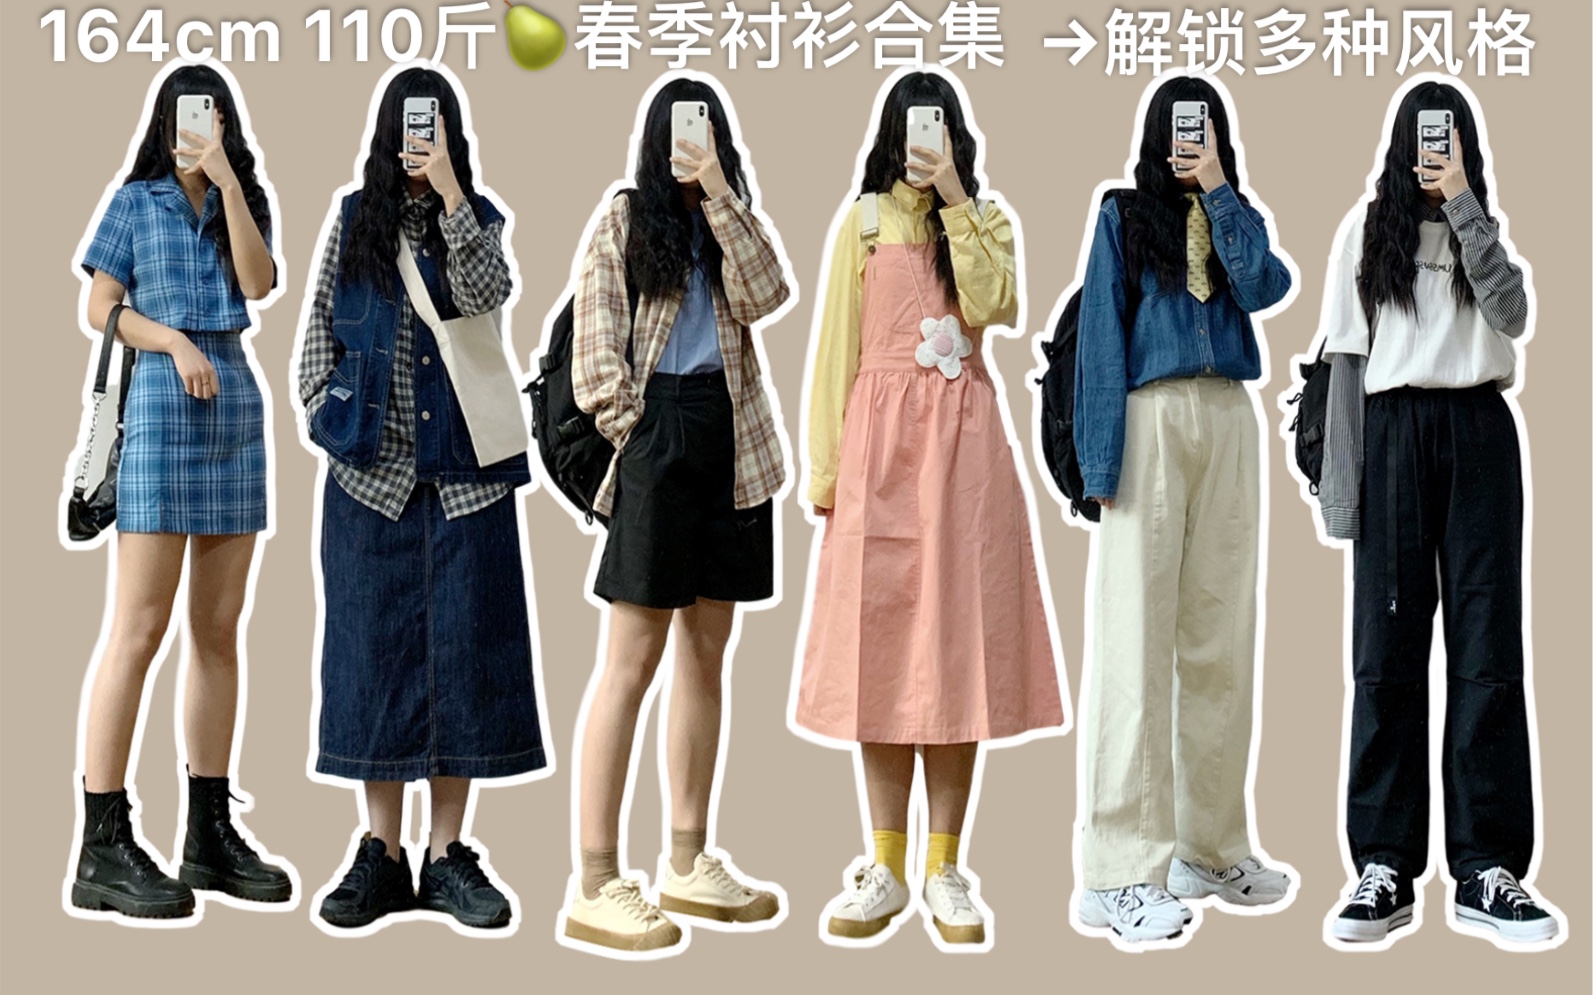 【164cm110斤】梨形身材|女生春季穿搭|7套衬衫搭配分享|多种风格不同搭配|日系少女上线啦